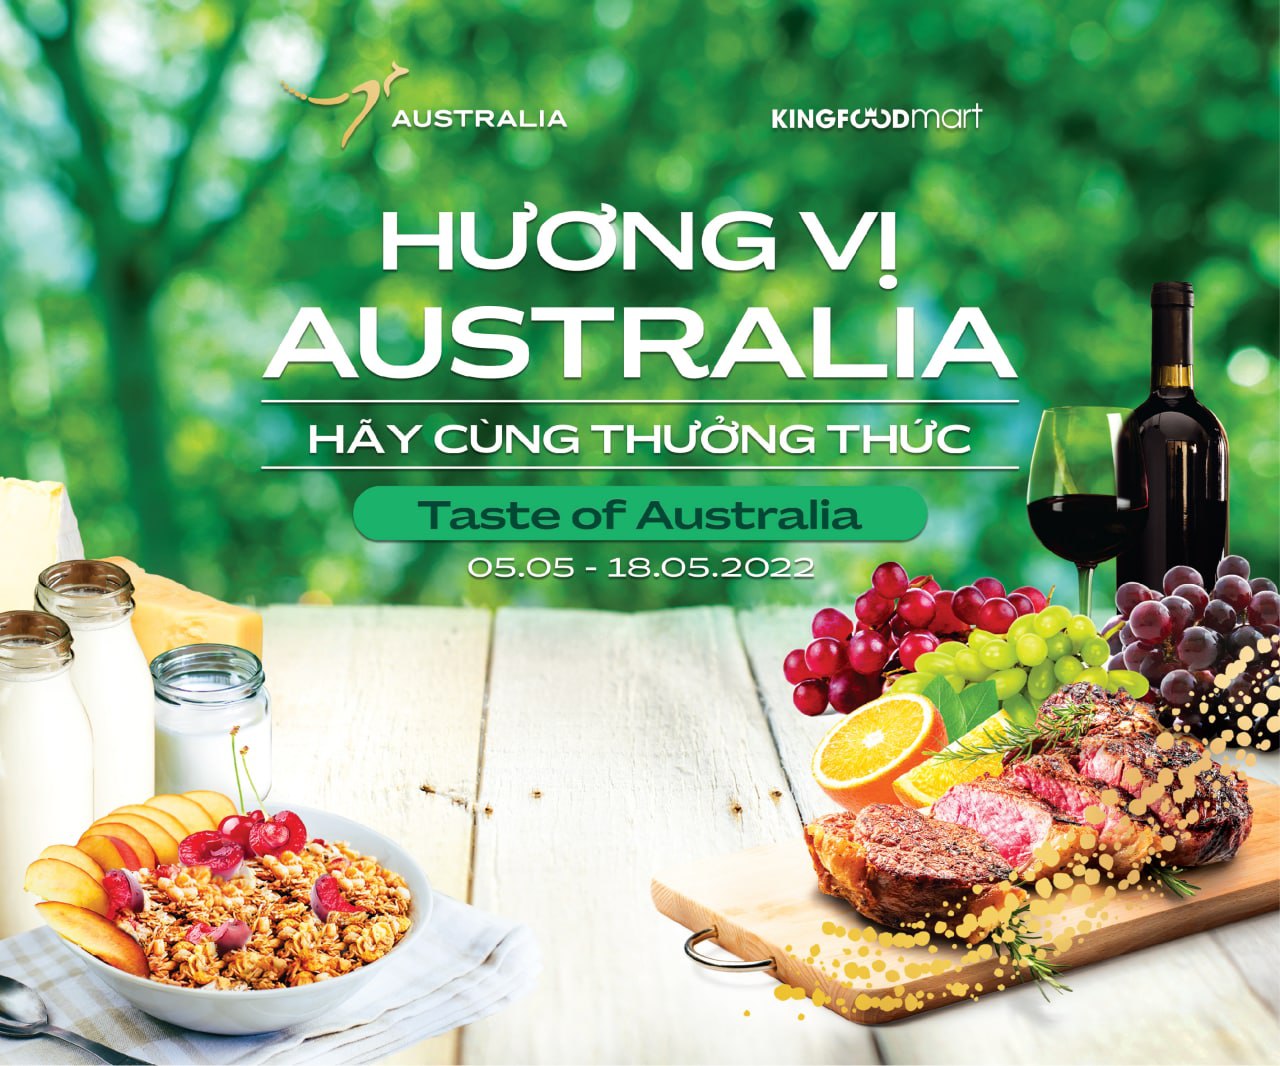 Trải Nghiệm Lễ Hội “Hương Vị Australia” 2022 Ngay Tại Kingfoodmart!